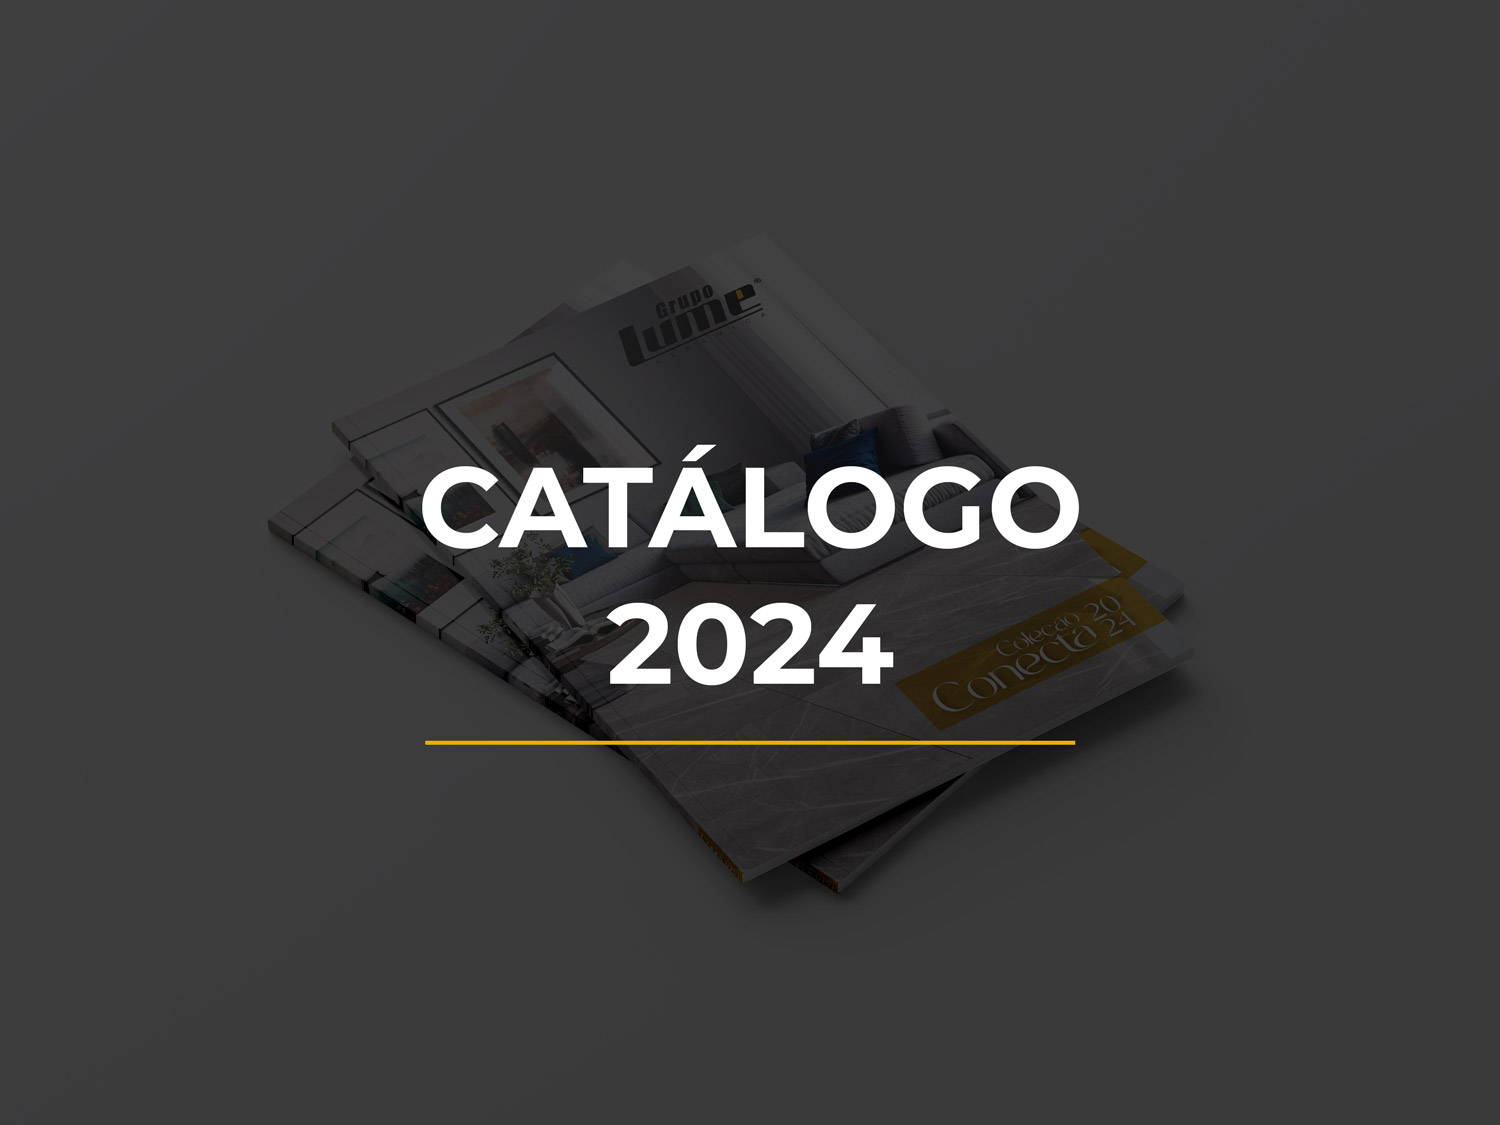 catalogo-2024-lume-mockup-02